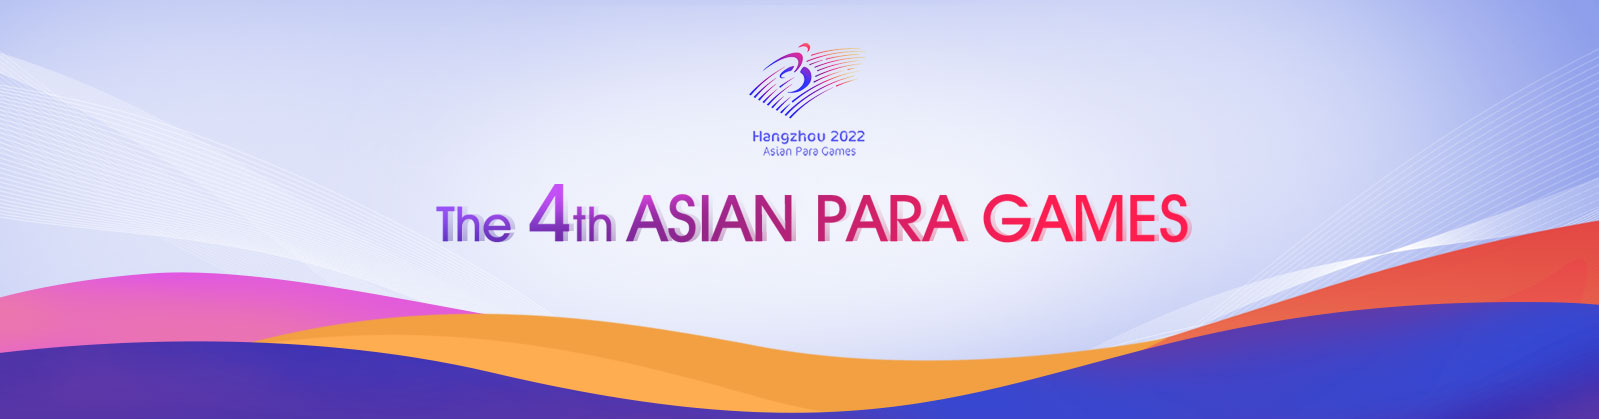 The 4th Asian Para Games